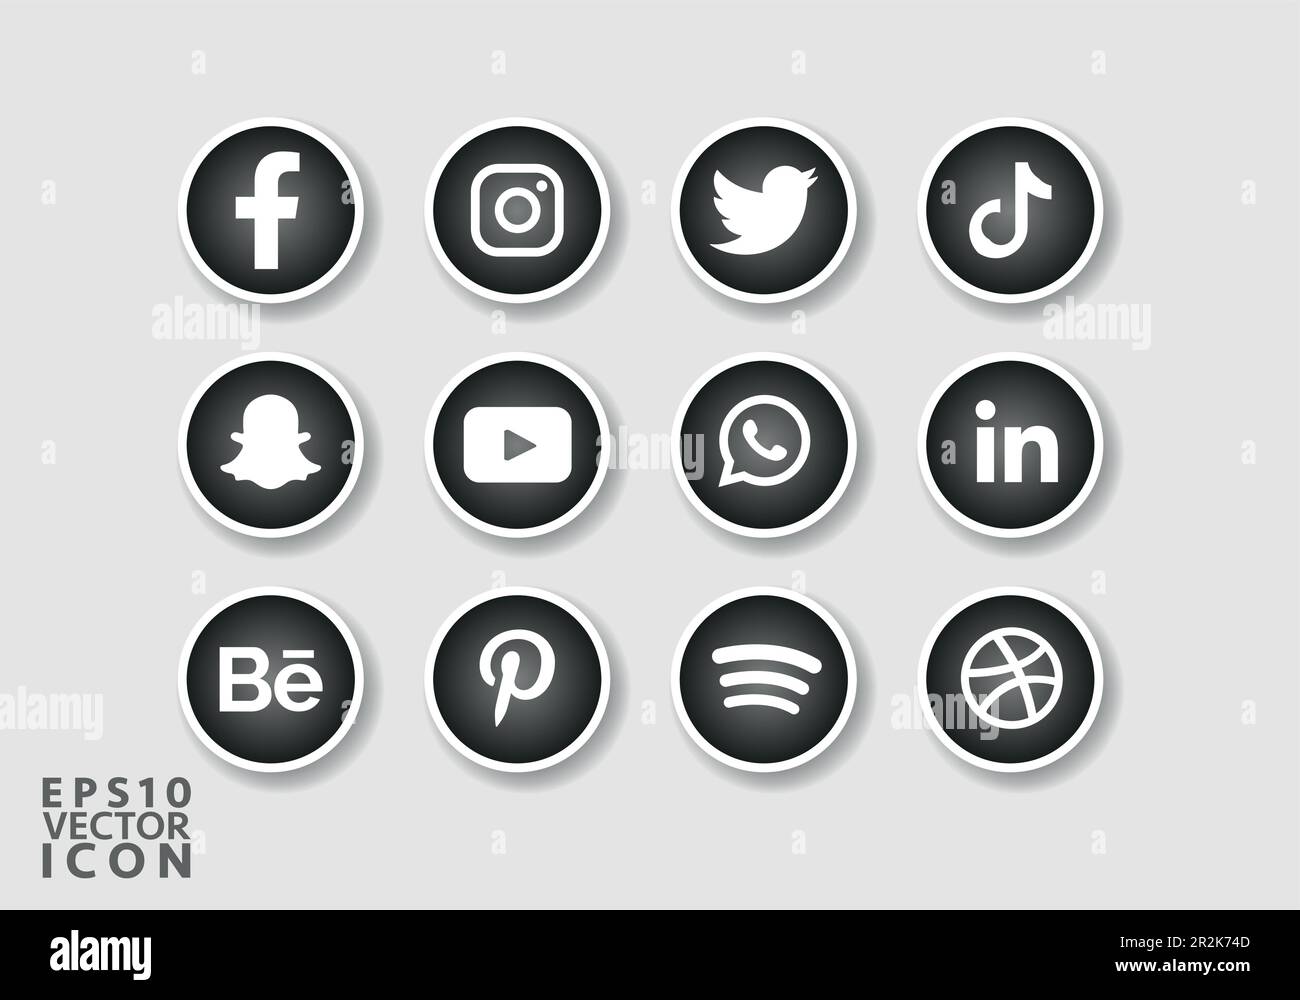 Set of popular social media icons Social media icons pack Social Media logos pack Stock Vector